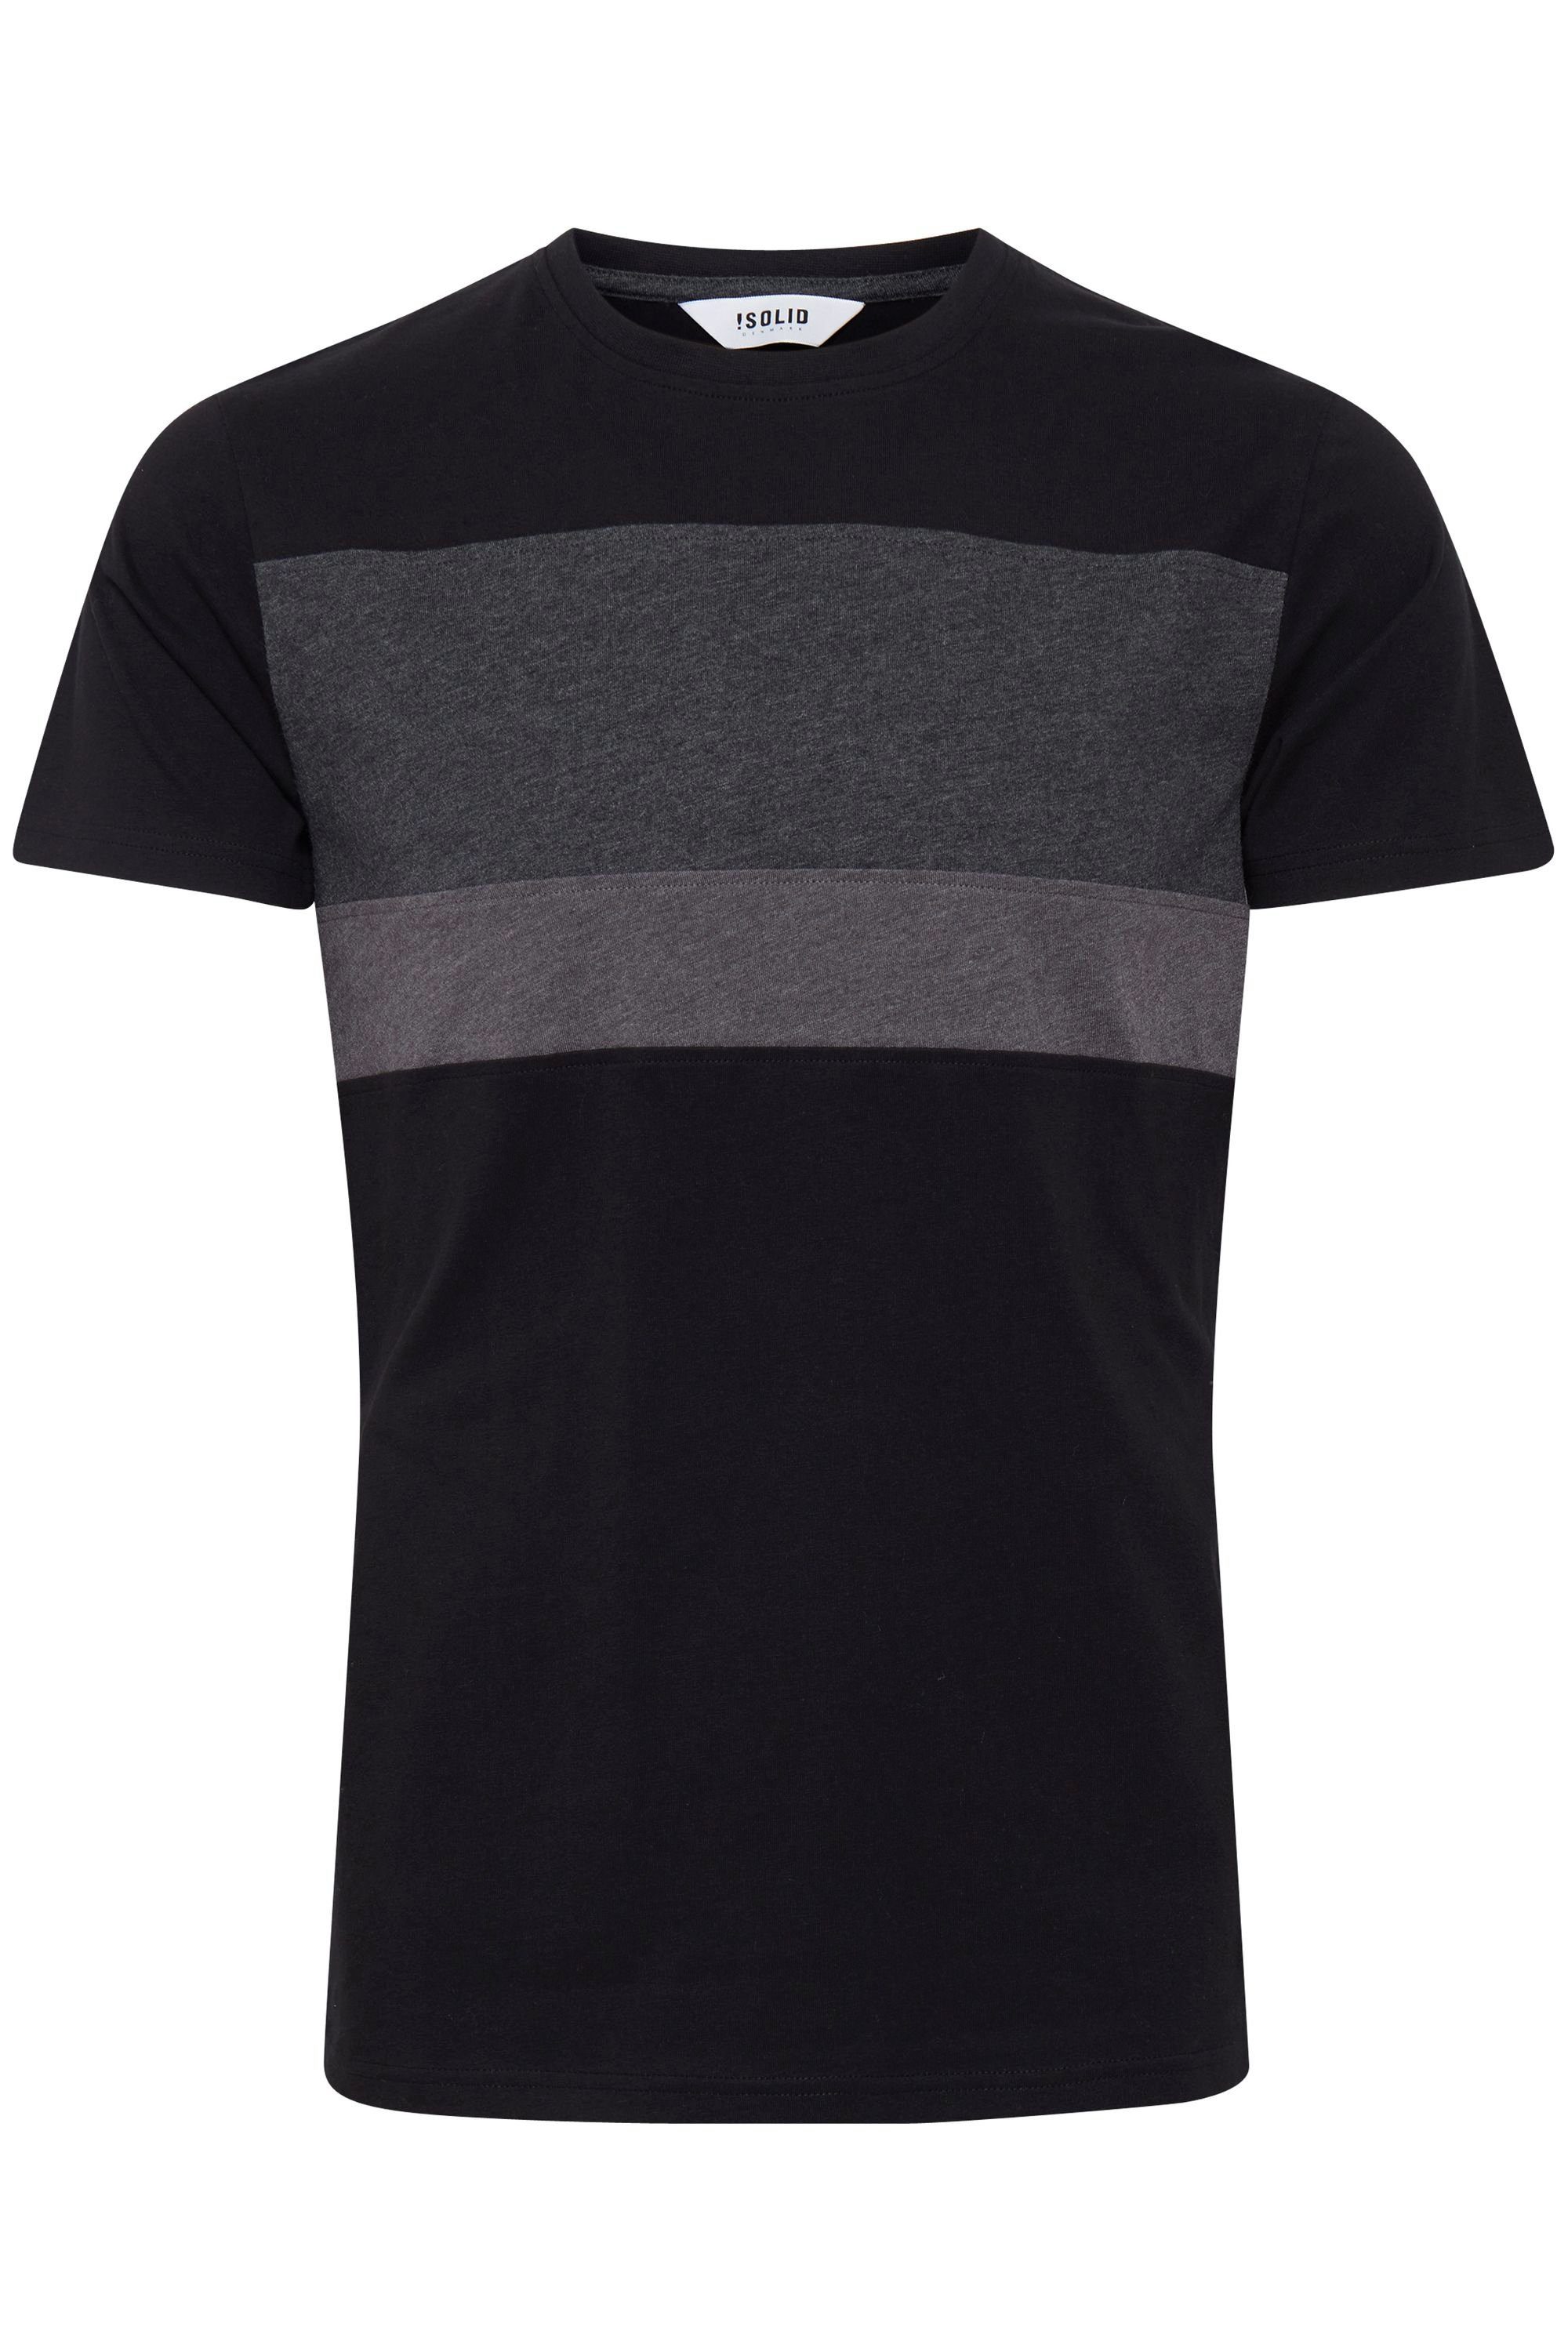 Tricolor !Solid SDSascha (9000) in Rundhalsshirt Streifenoptik T-Shirt Black